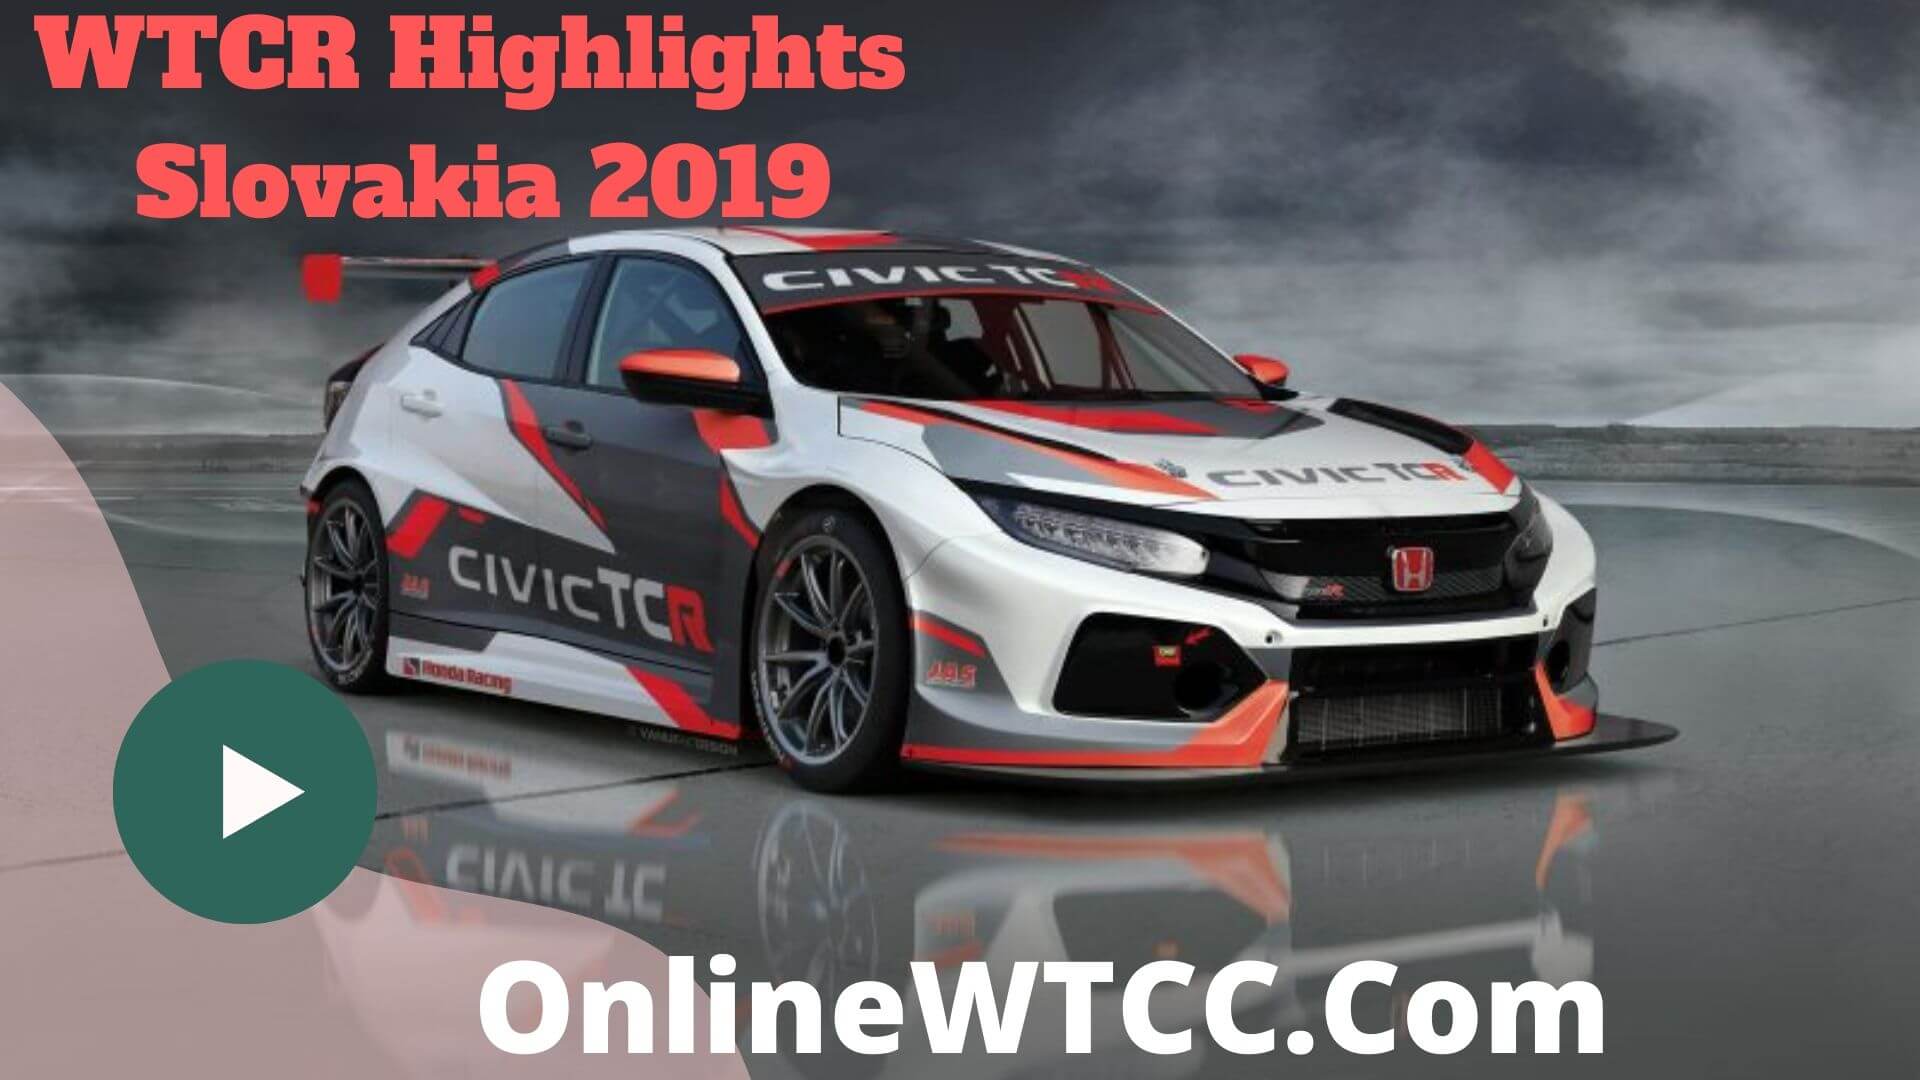 Slovakia WTCR Highlights 2019